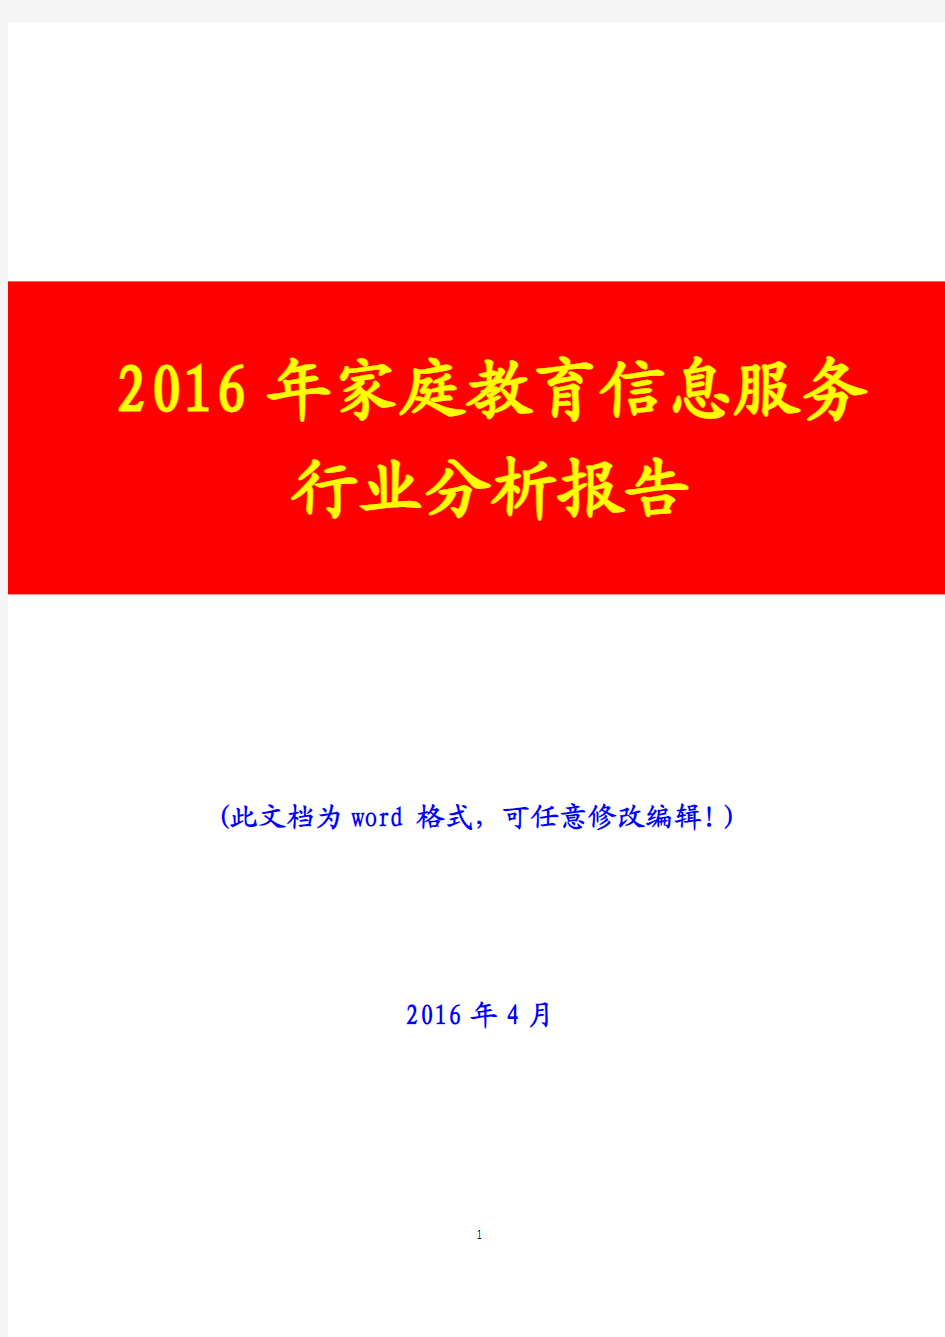 2016年家庭教育信息服务行业分析报告(完美版)